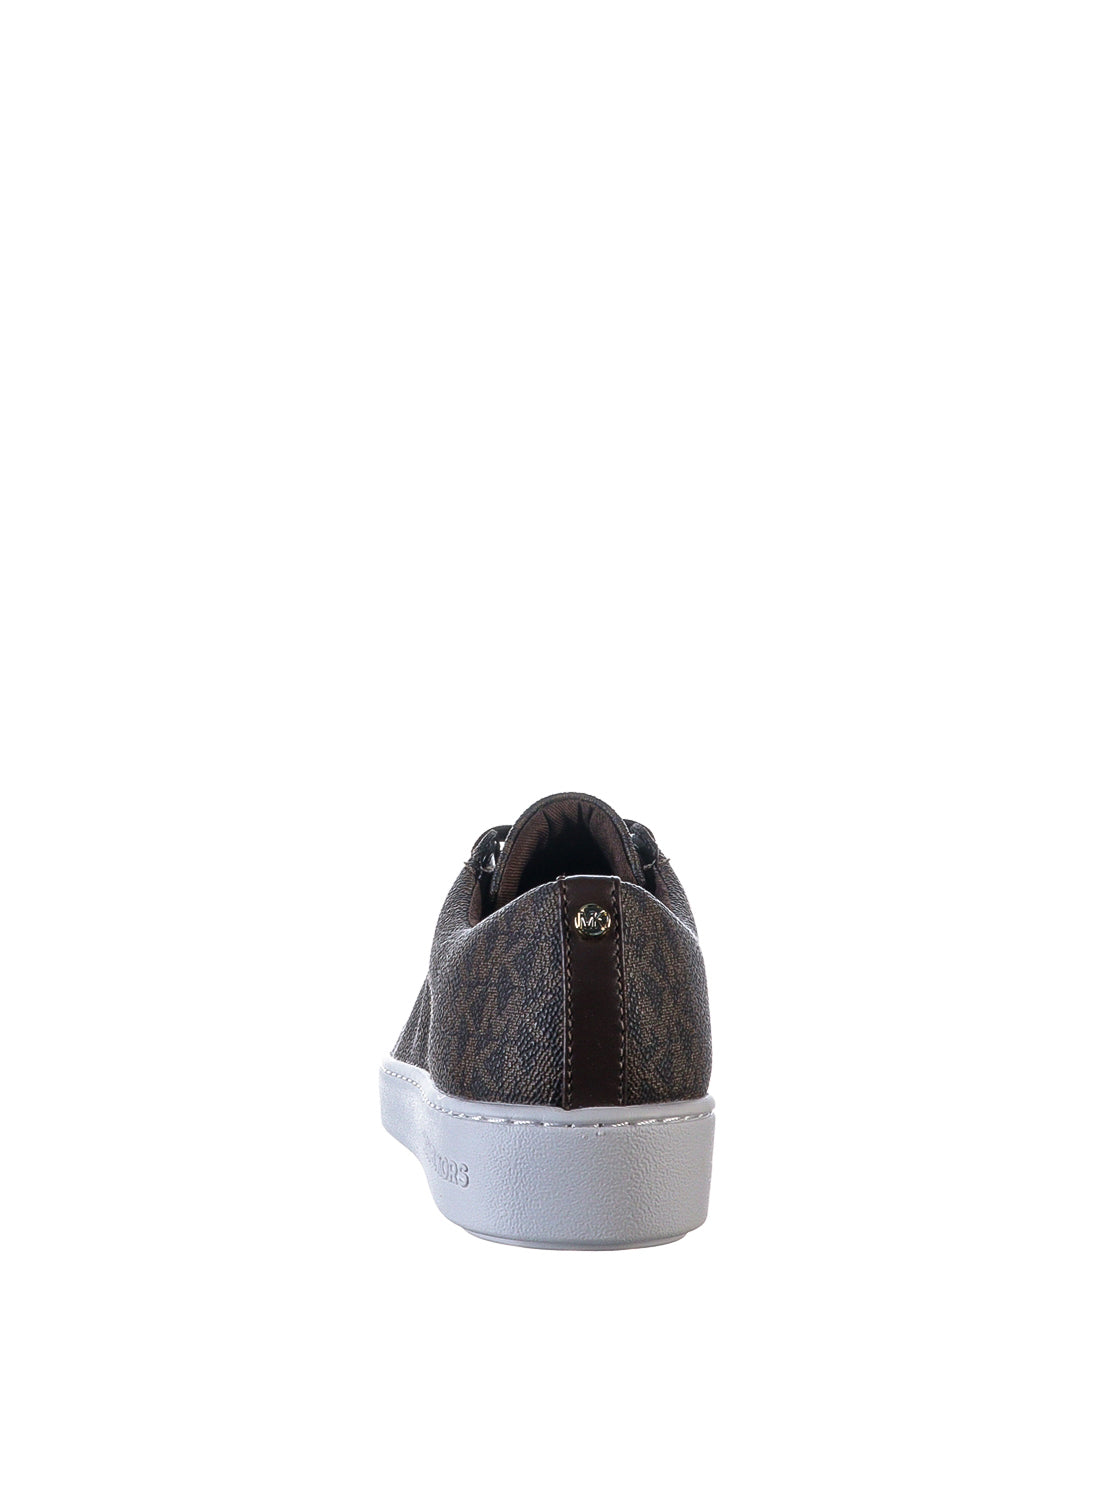 Pantofi sport cu imprimeu cu logo Keaton Lace Up Michael Kors